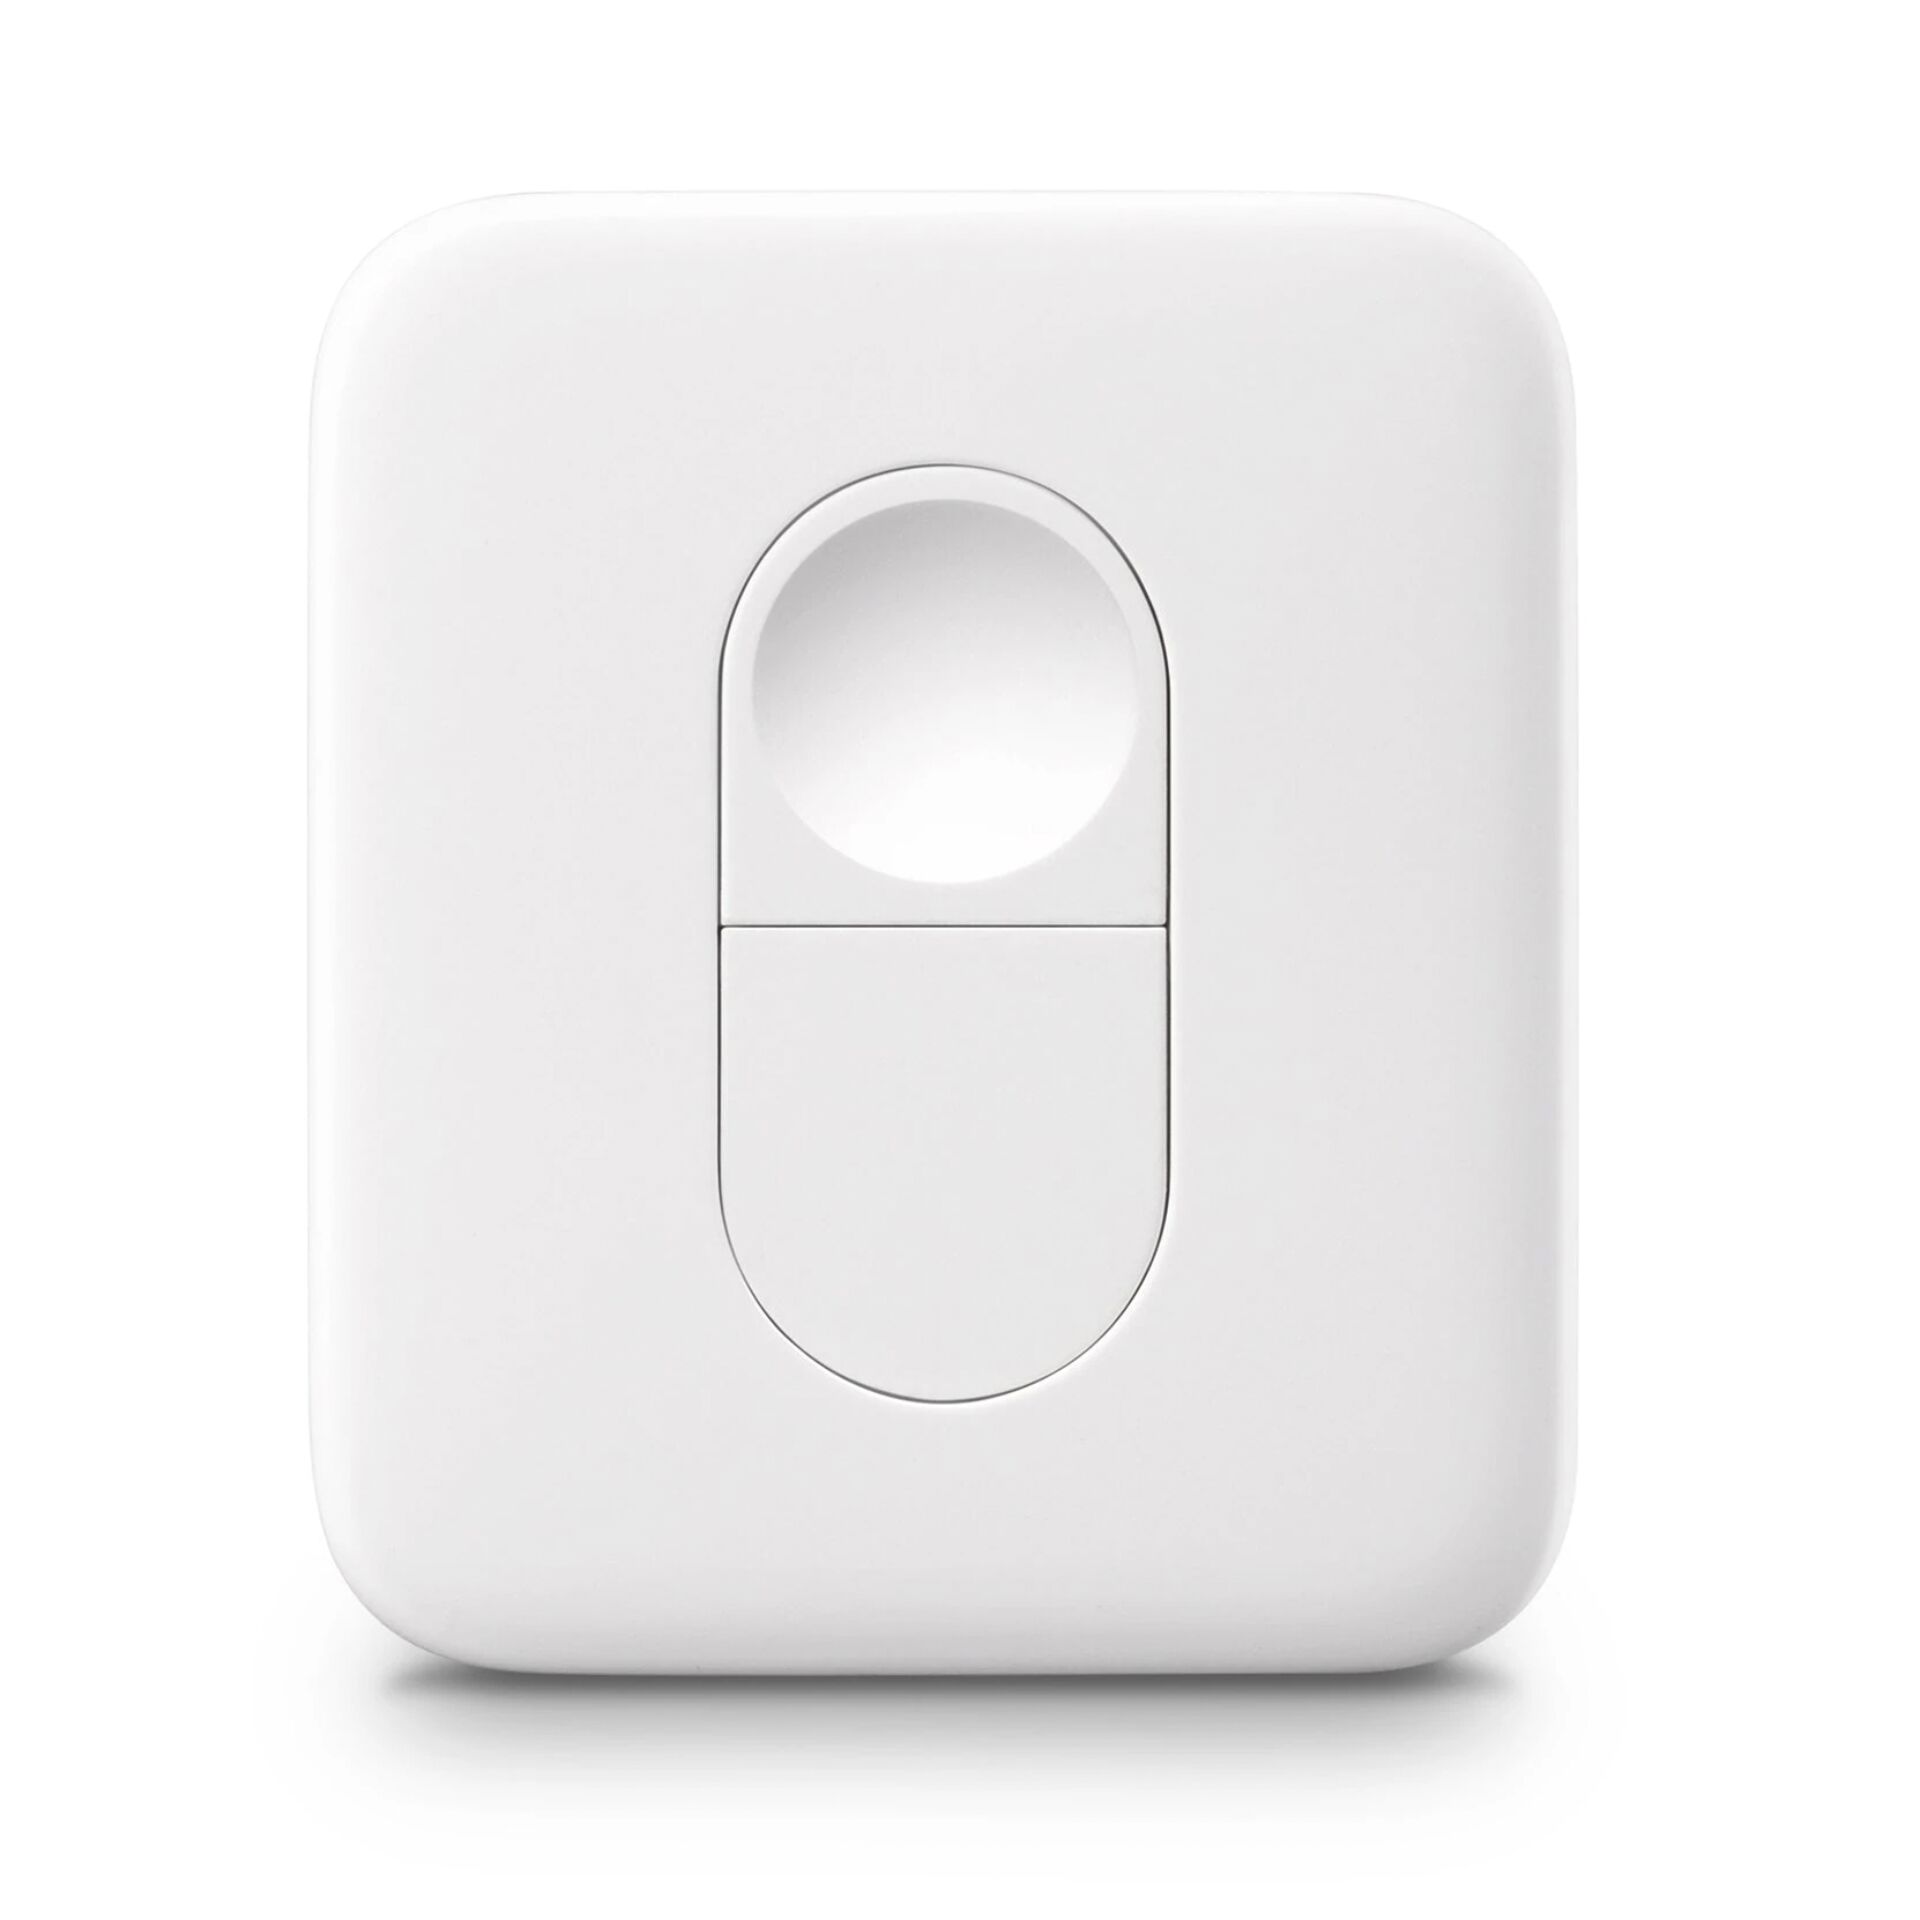 SwitchBot Remote Fernbedienung Bluetooth Lighting Drucktasten